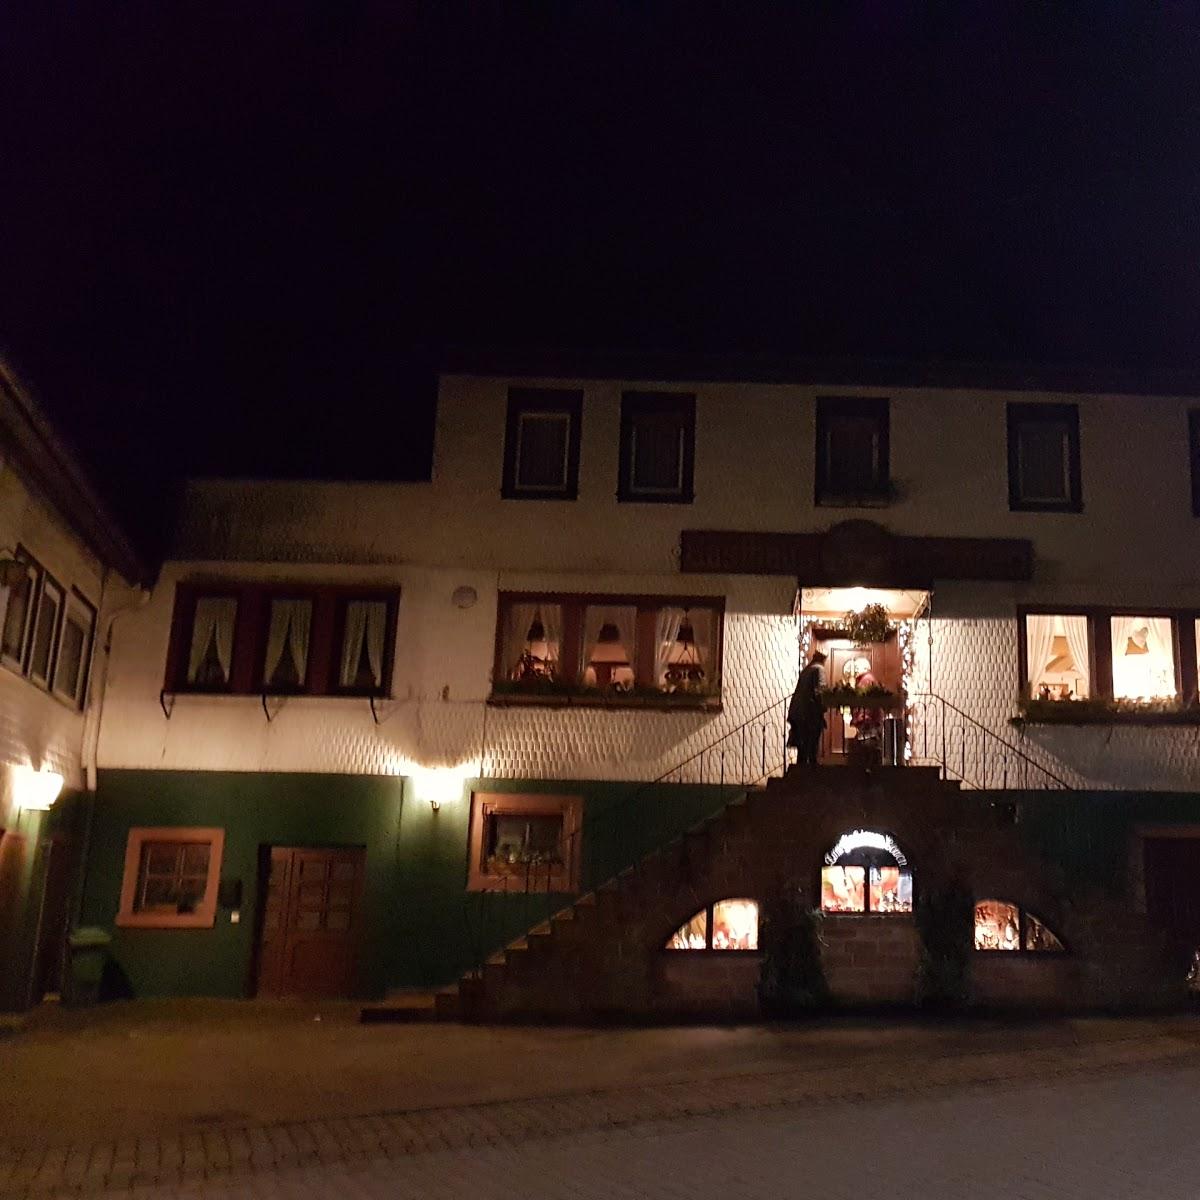 Restaurant "Zum Goldenen Löwen" in Mossautal